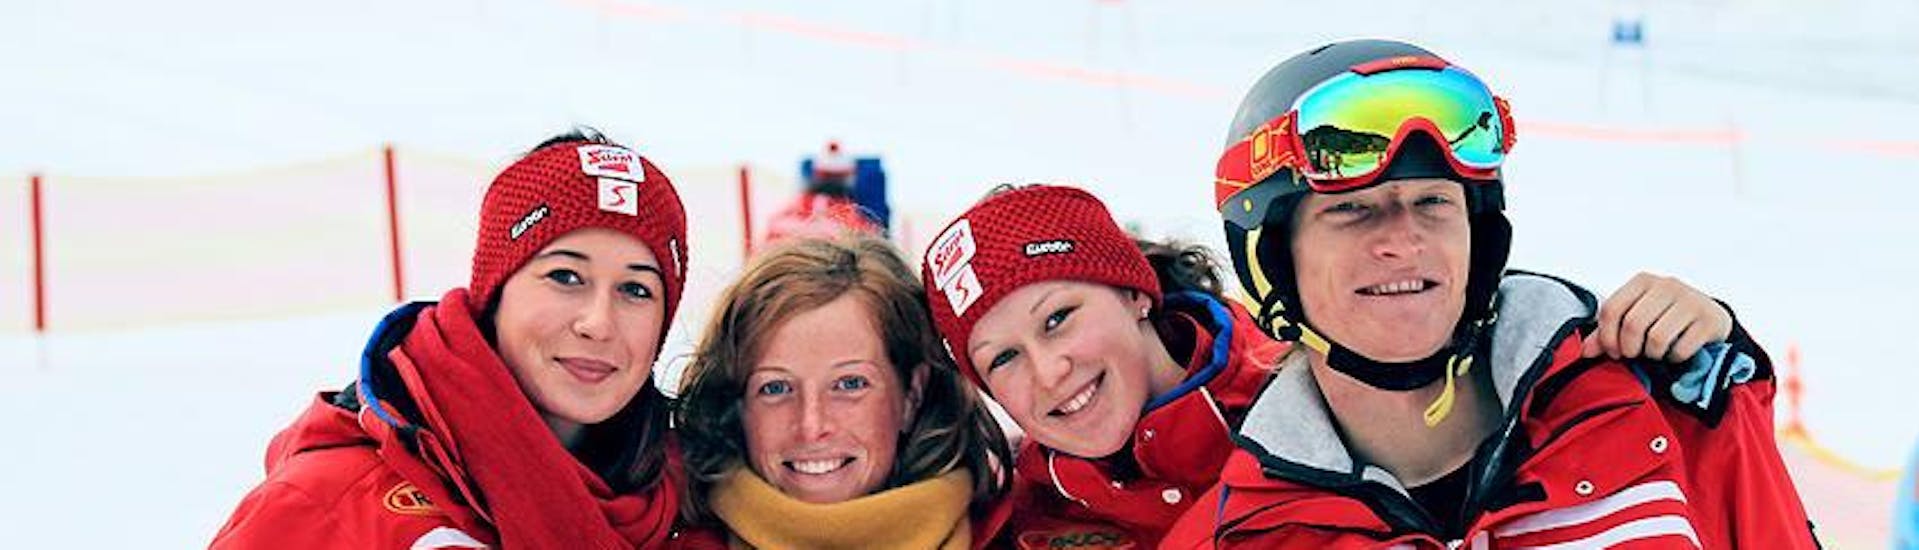 Vier skileraren van Qualitäts-Skischule Brunner glimlachen in de camera en kijken uit naar de deelnemers aan de kinderskilessen van alle niveaus.